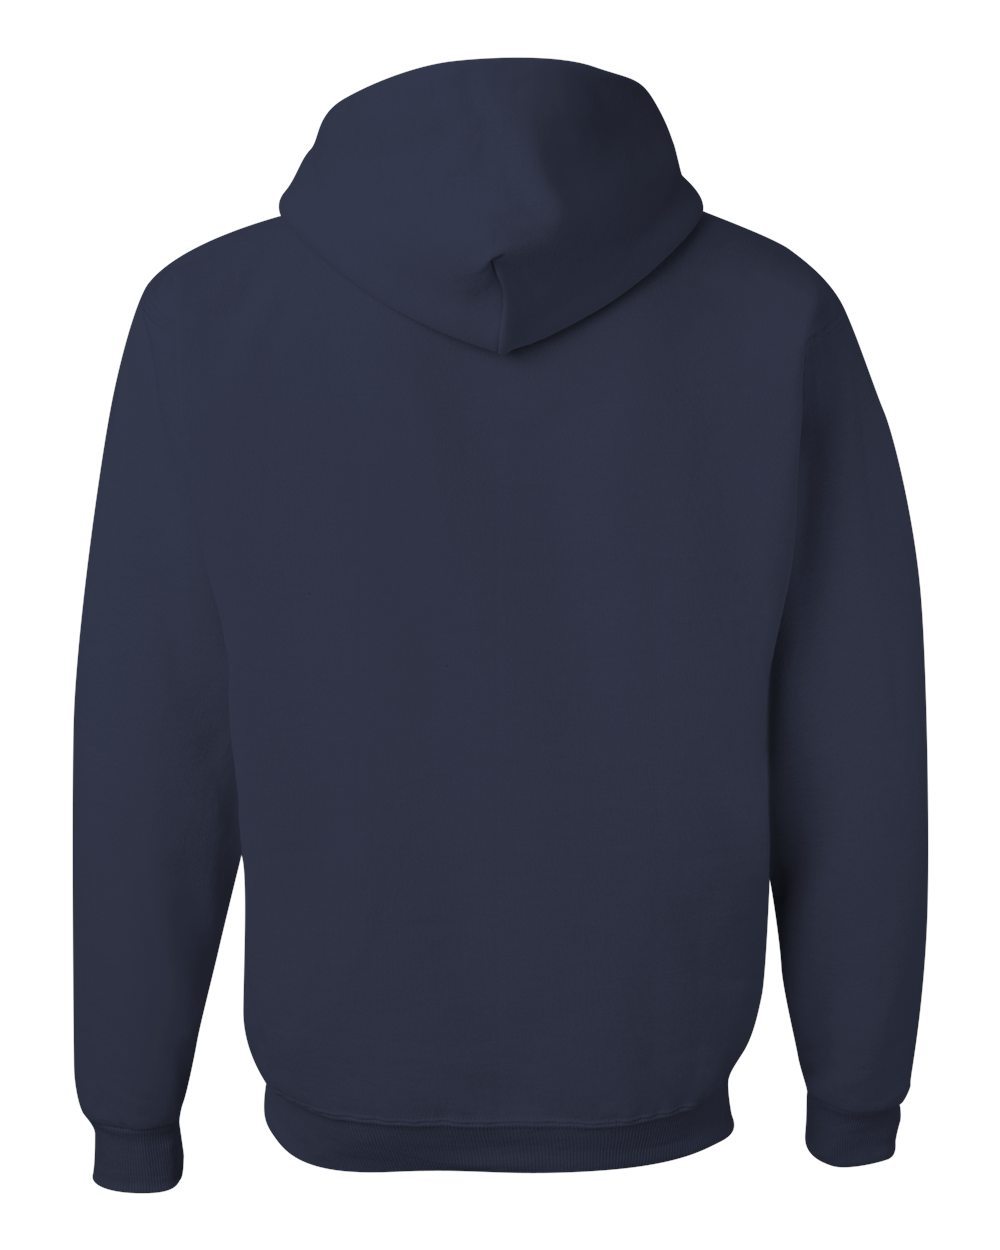 Navy Jerzees NuBlend® Hooded Sweatshirt